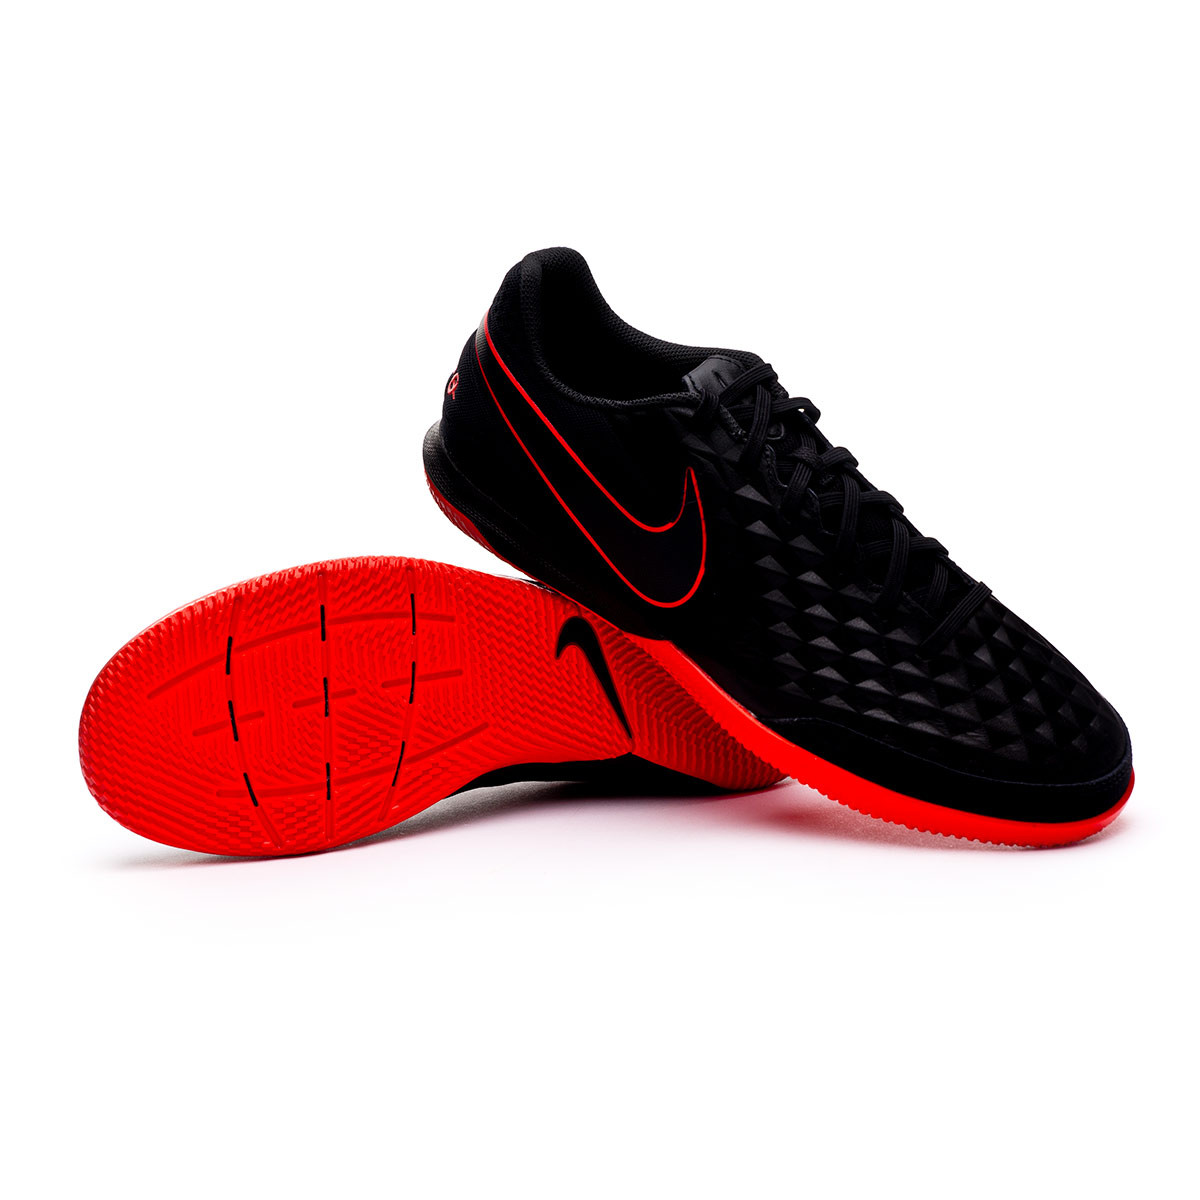 Zapatilla Nike Tiempo Legend 8 Academy IC Black-Dark smoke grey-Chile red -  Tienda de fútbol Fútbol Emotion